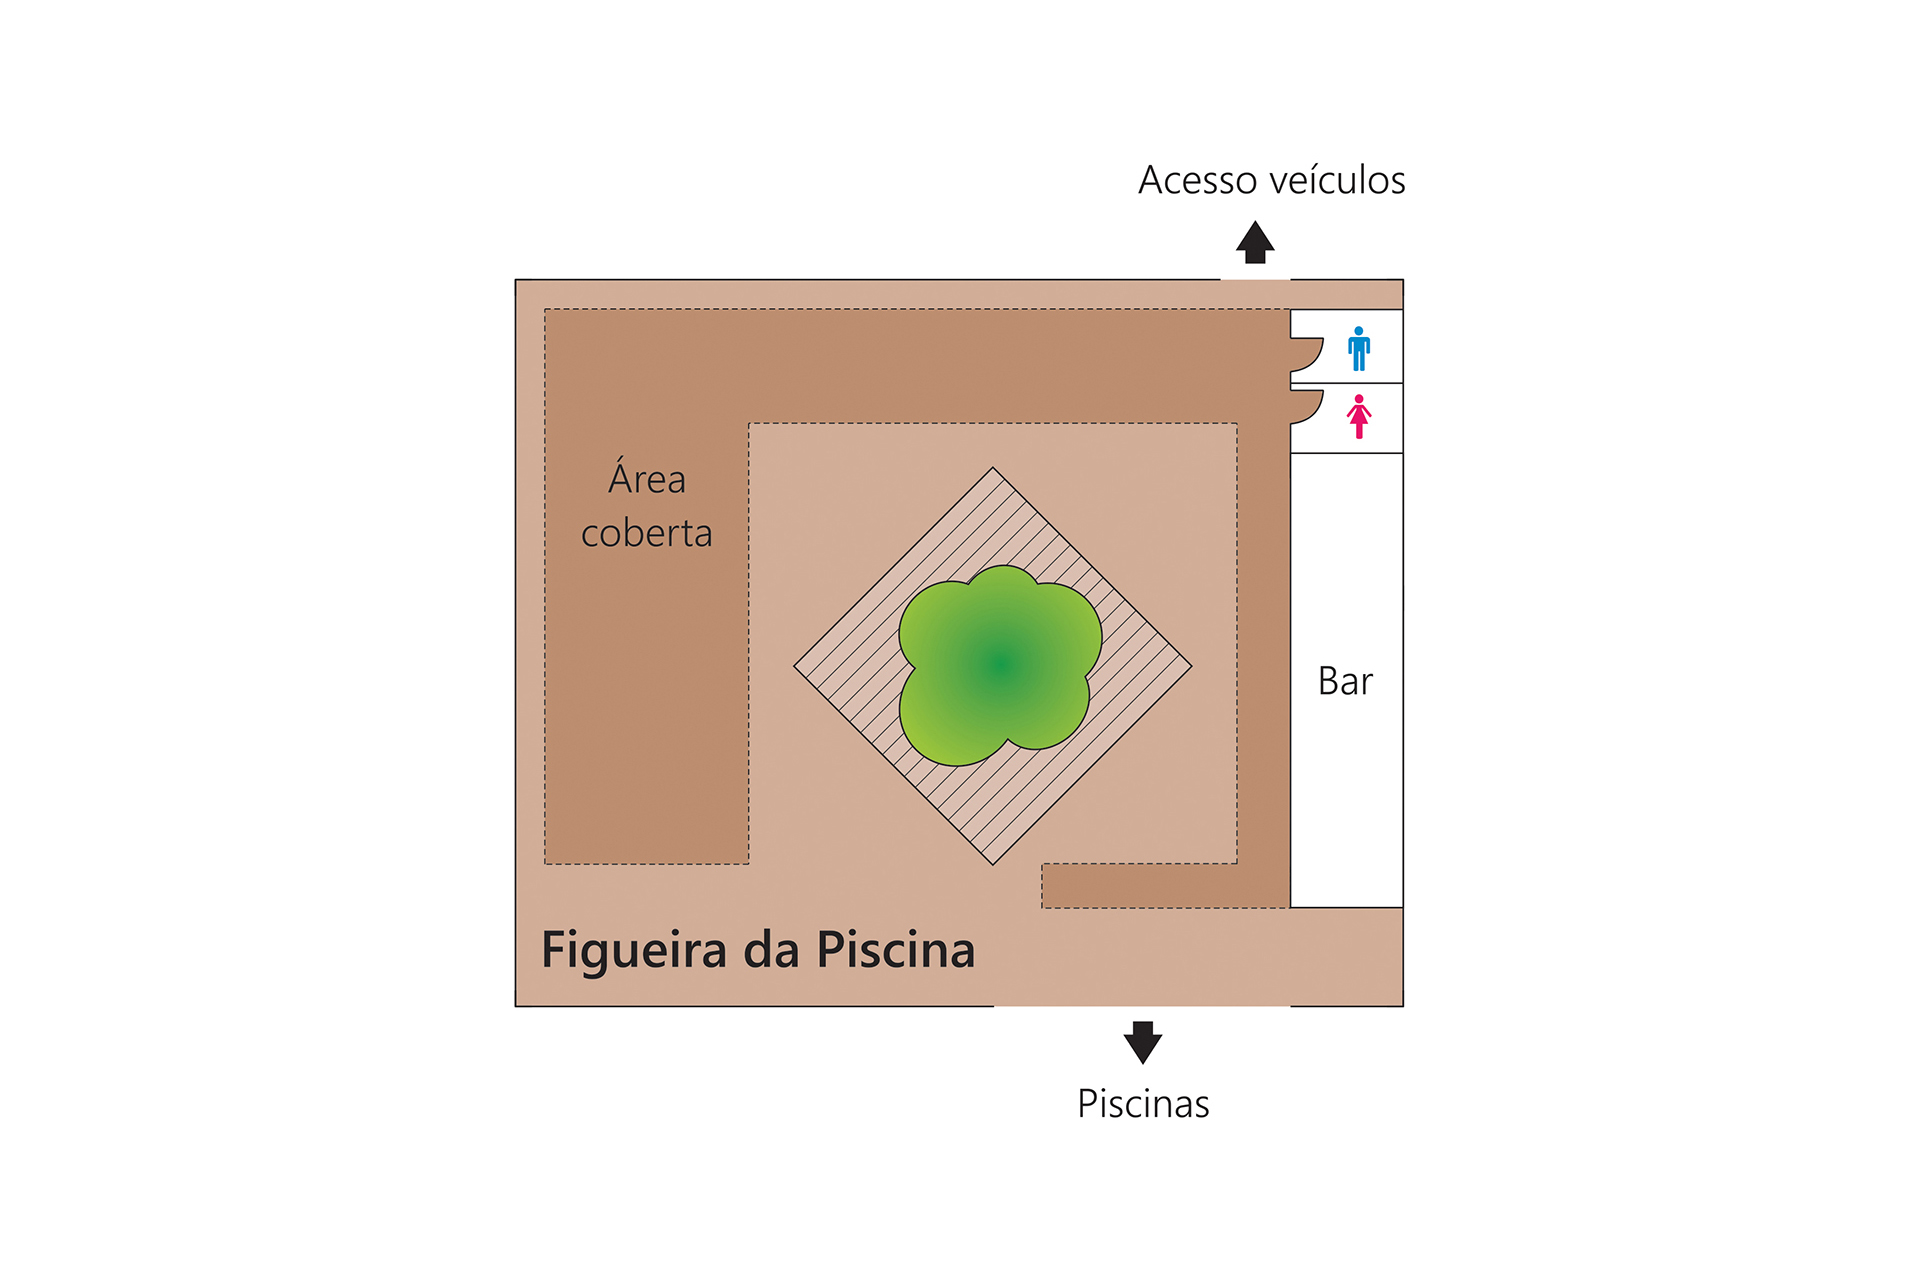 Grande Hotel São Pedro - Planta Figueira da Piscina